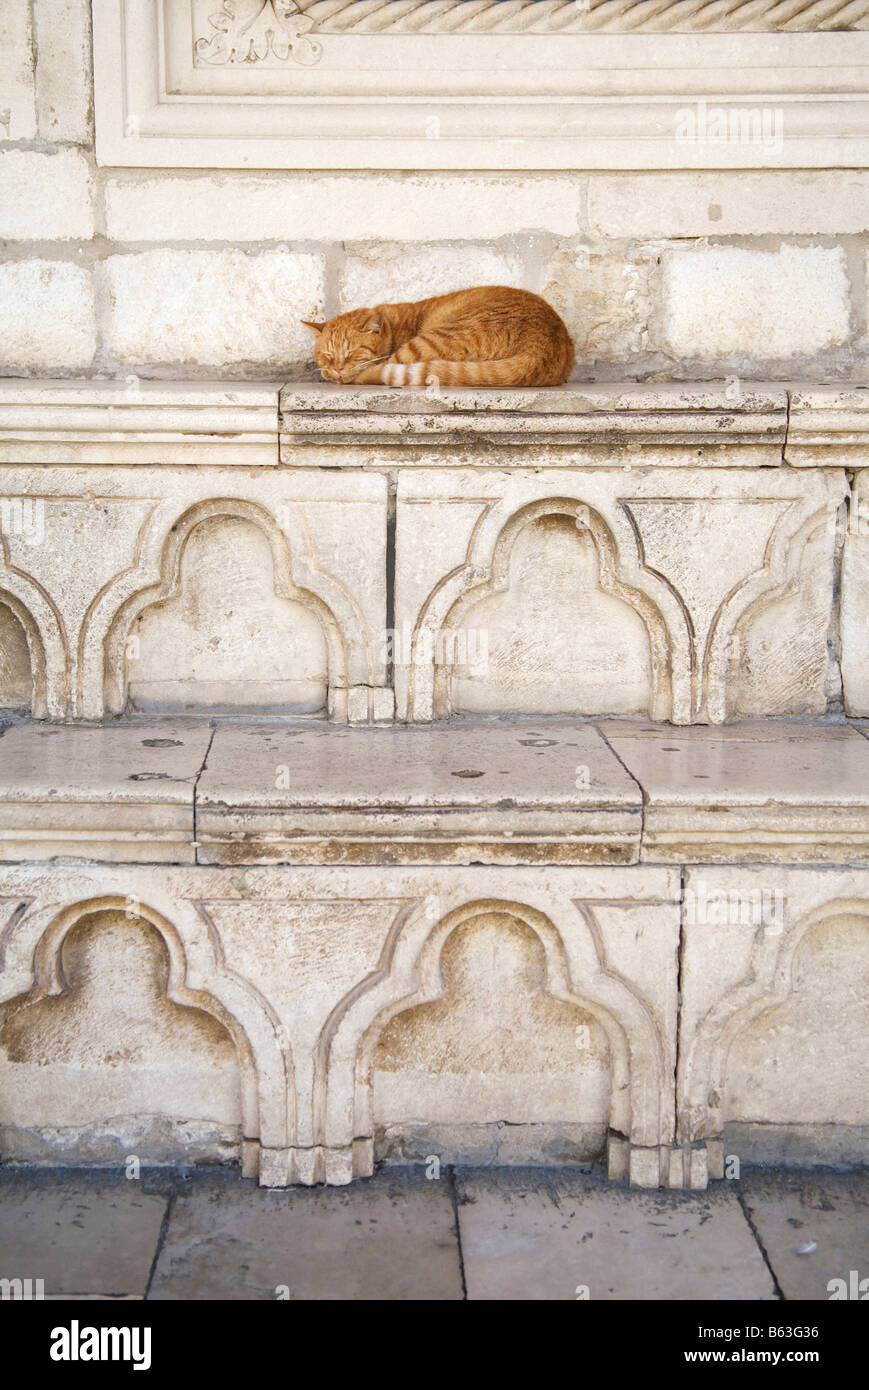 Dans la région de Dubrovnik, en Croatie, un chat dort sur le gingembre en pierre sculptée du 15ème siècle, Palais du Recteur (Knezev Dvor) Banque D'Images